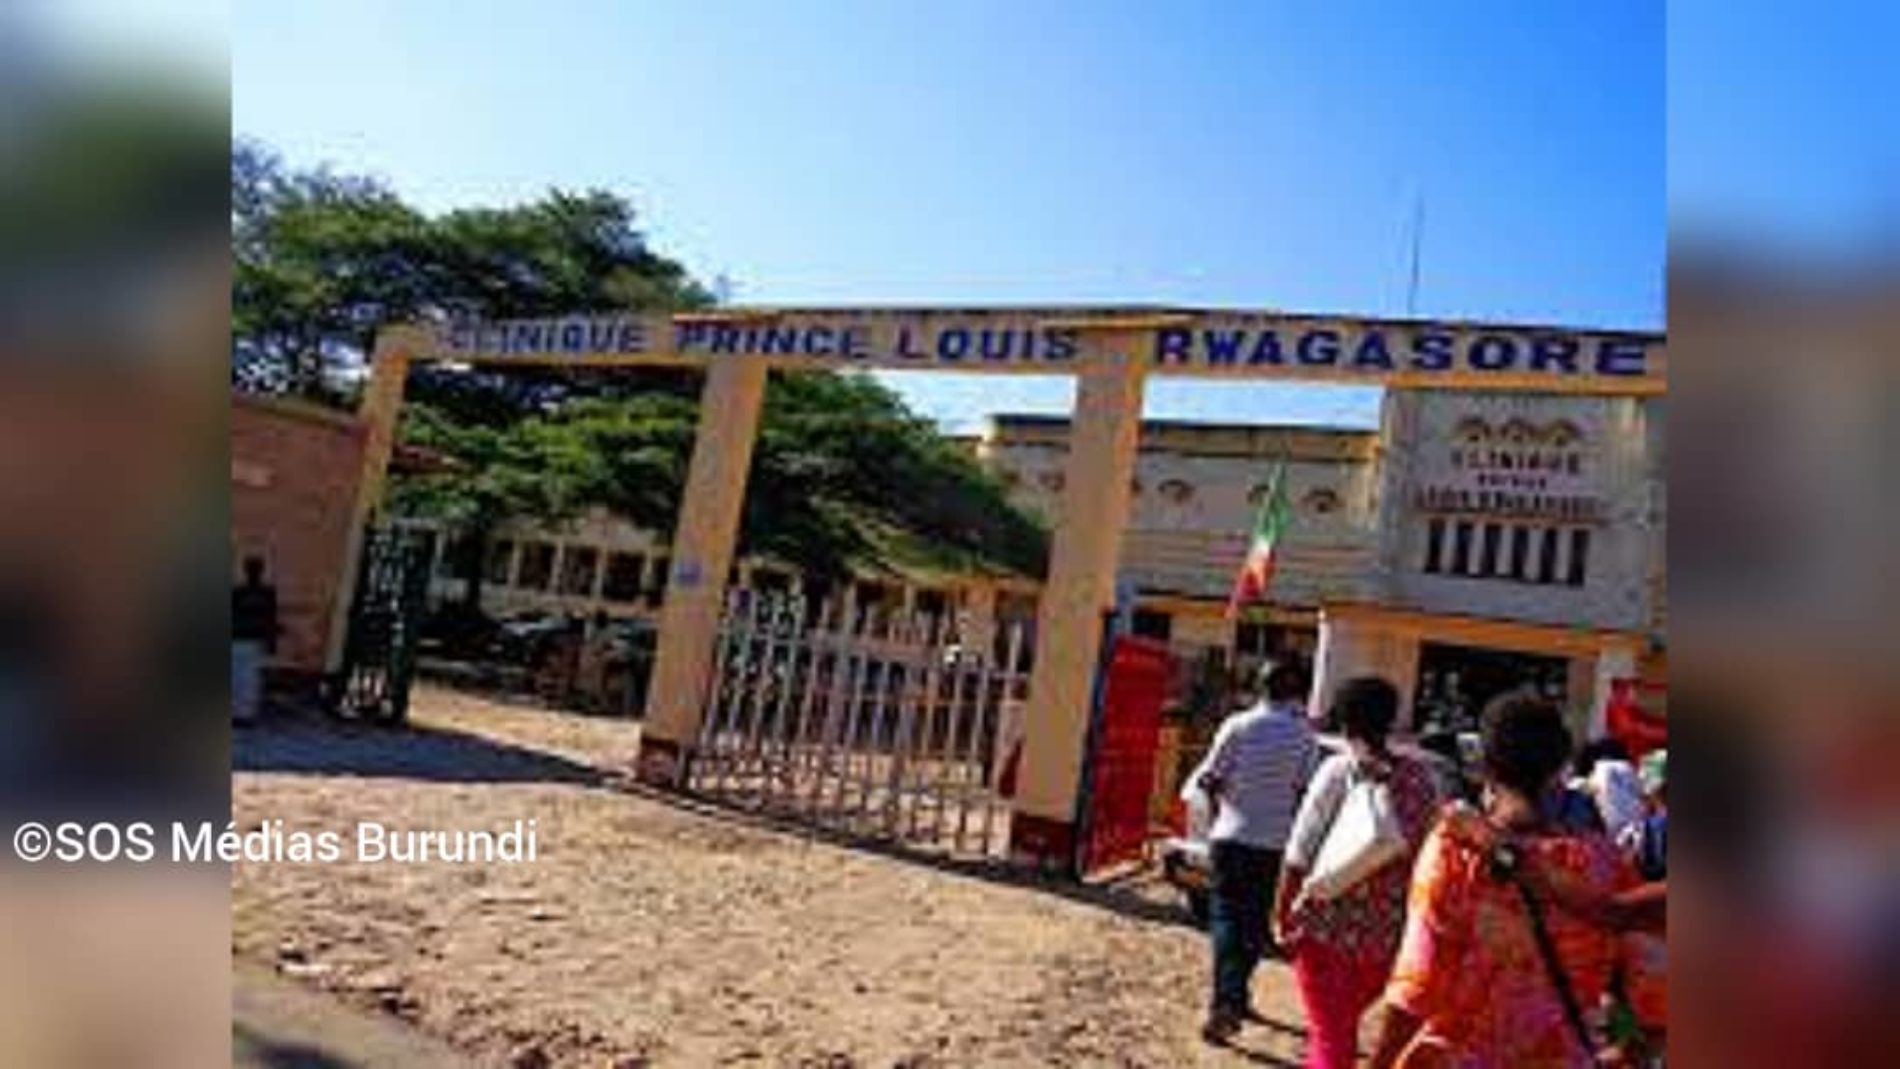 Prince Louis Rwagasore : un hôpital aussi malade que les patients qu’il reçoit